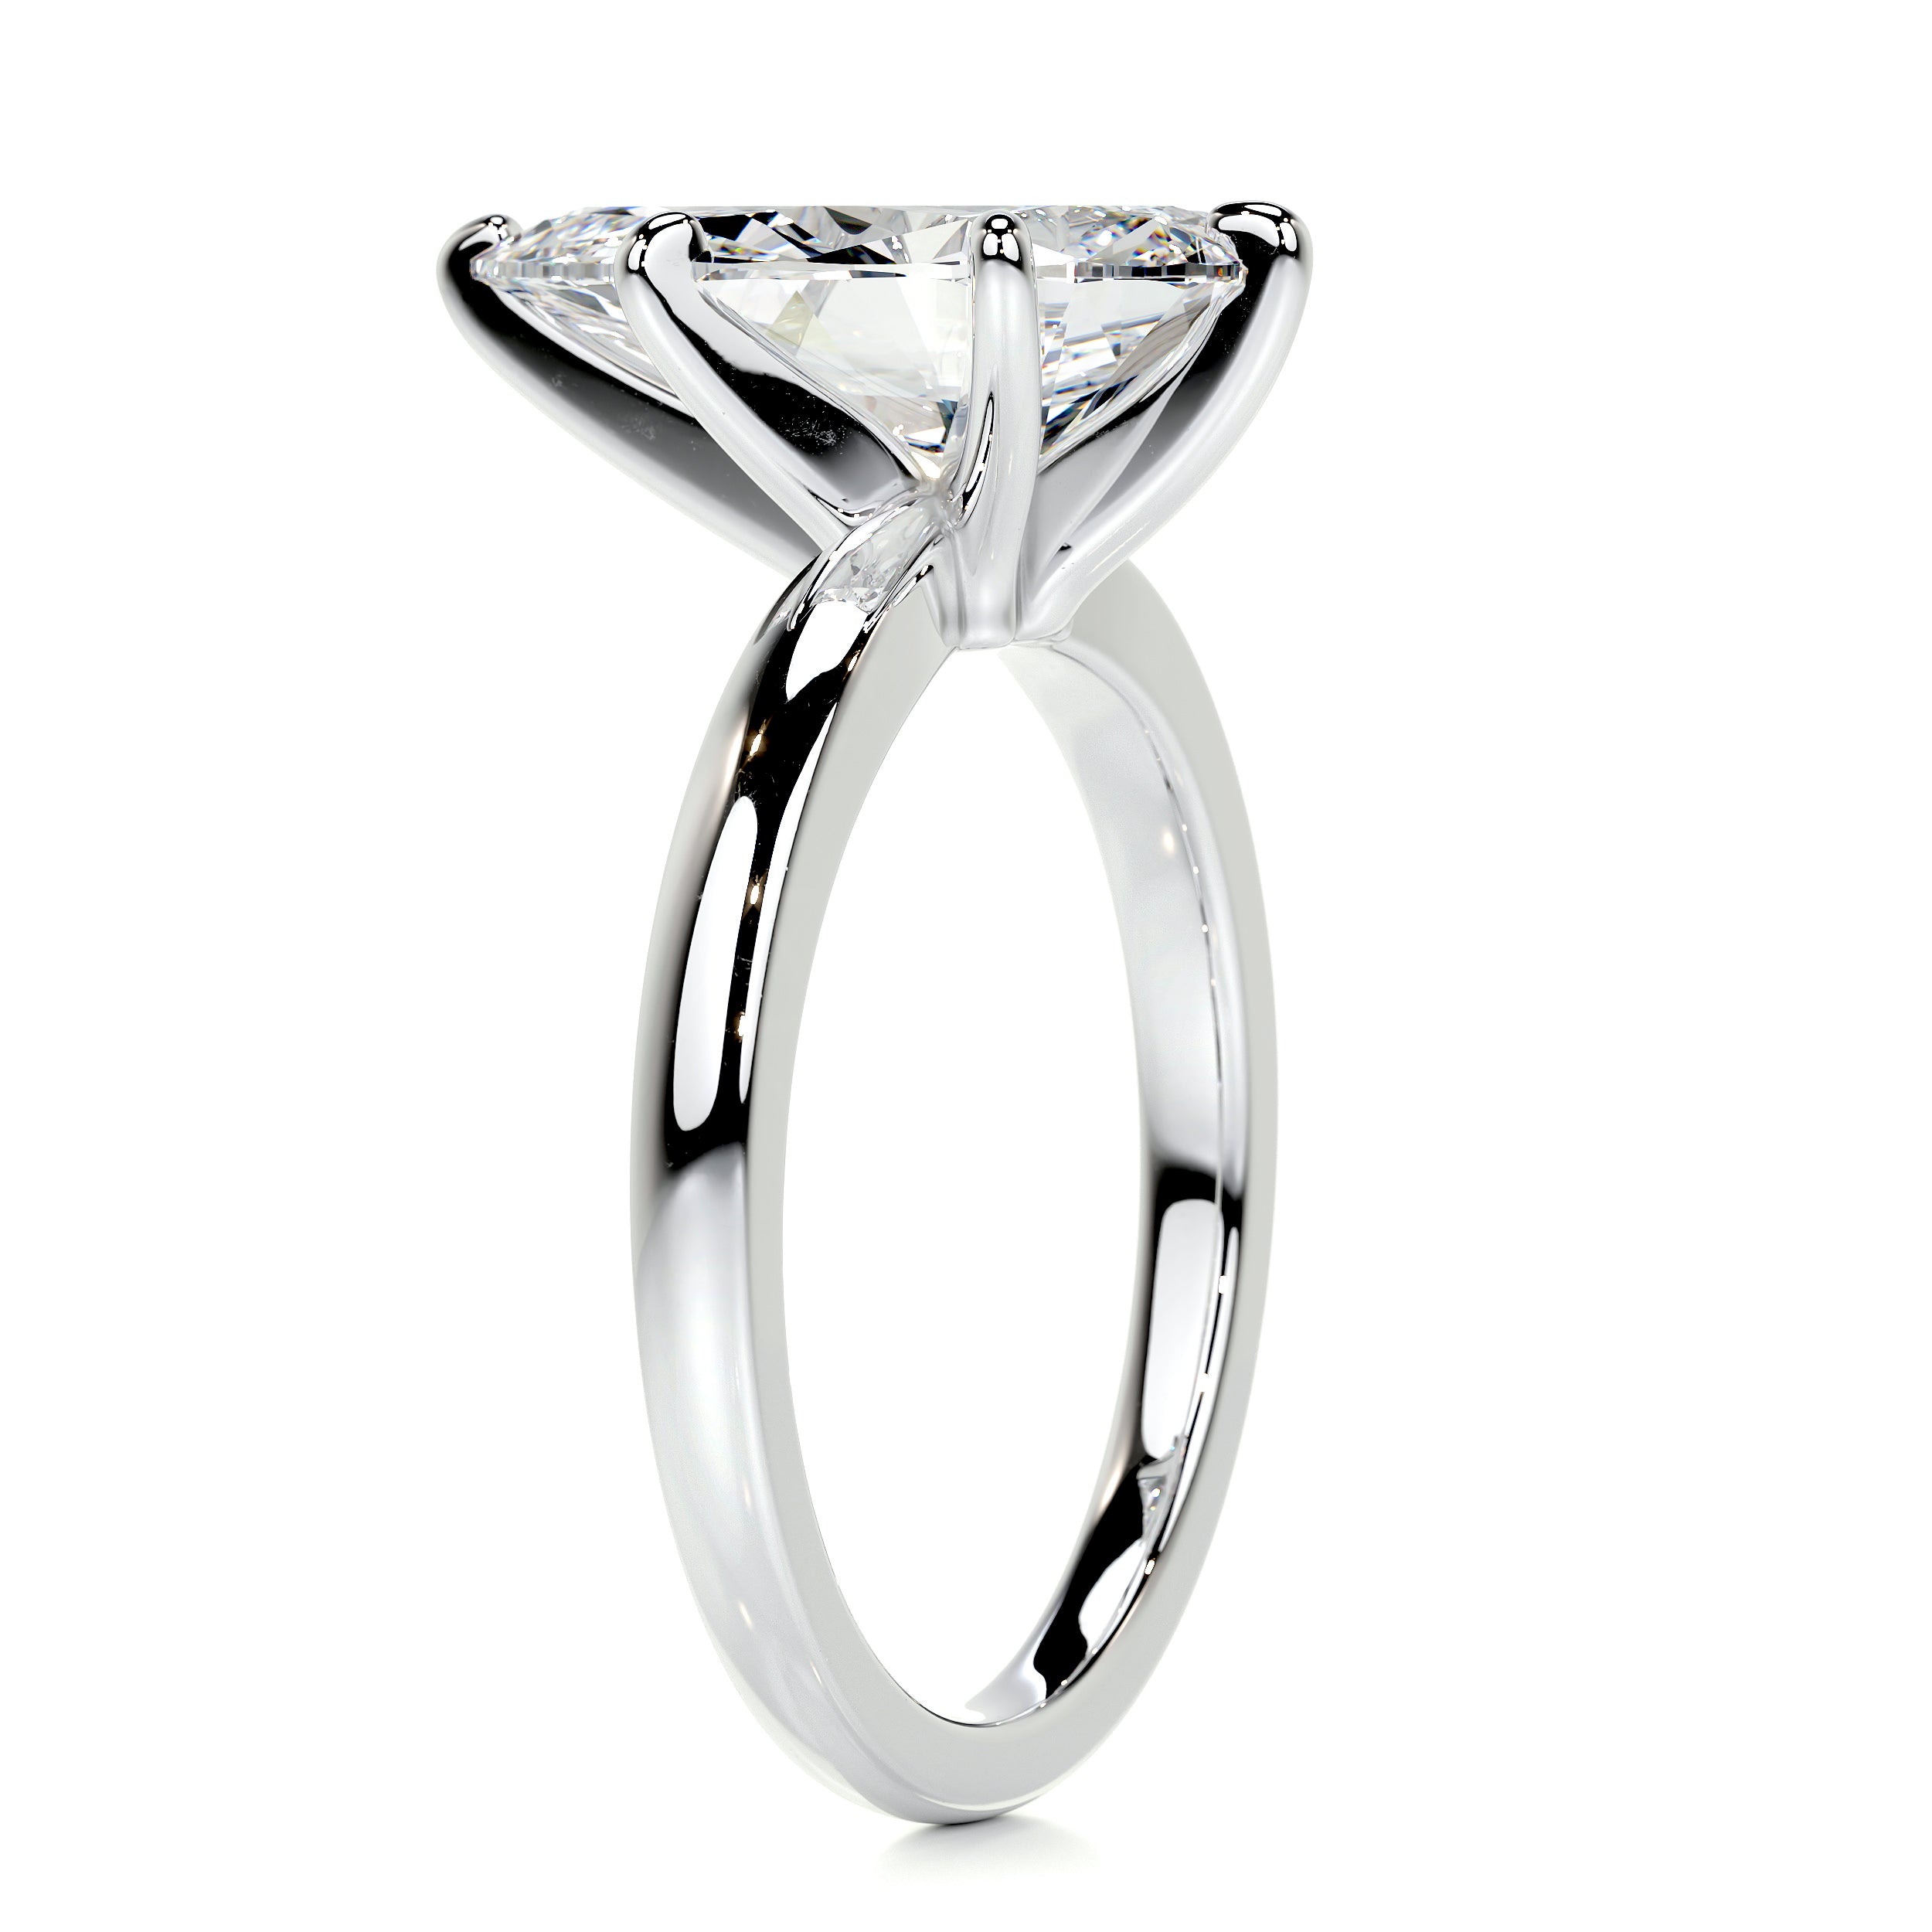 Adaline Diamond Engagement Ring   (5 Carat) -18K White Gold